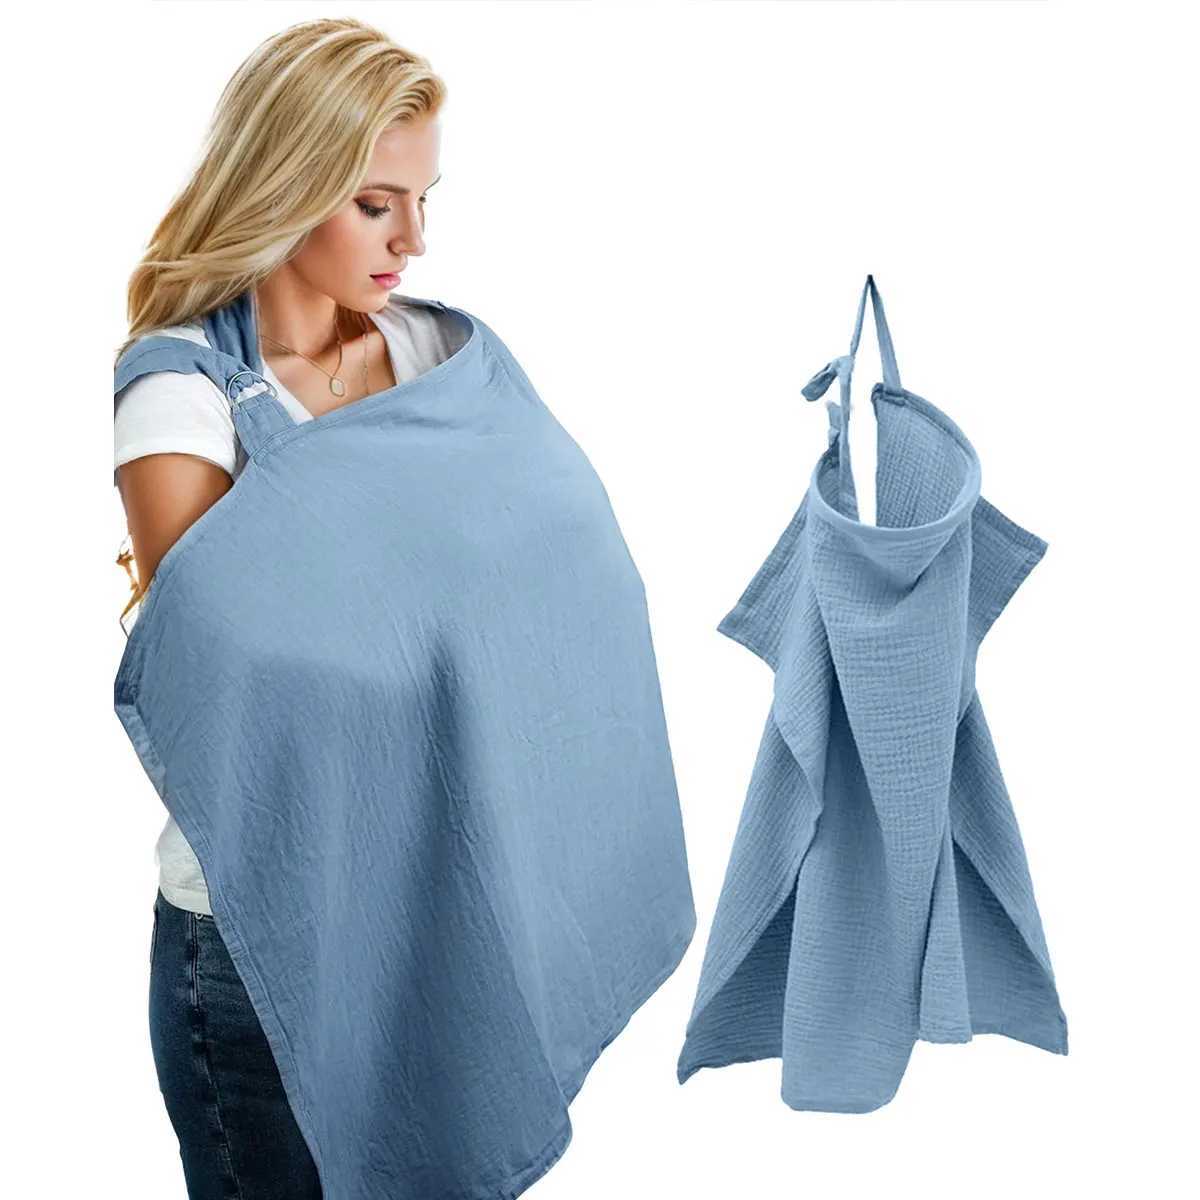 غطاء التمريض منشفة الرضاعة الطبيعية وتغطيها لمنع تسرب الضوء عند الخروج للرضاعة الطبيعية. قطعة قماش محمية شام للعربة Sun Y240517